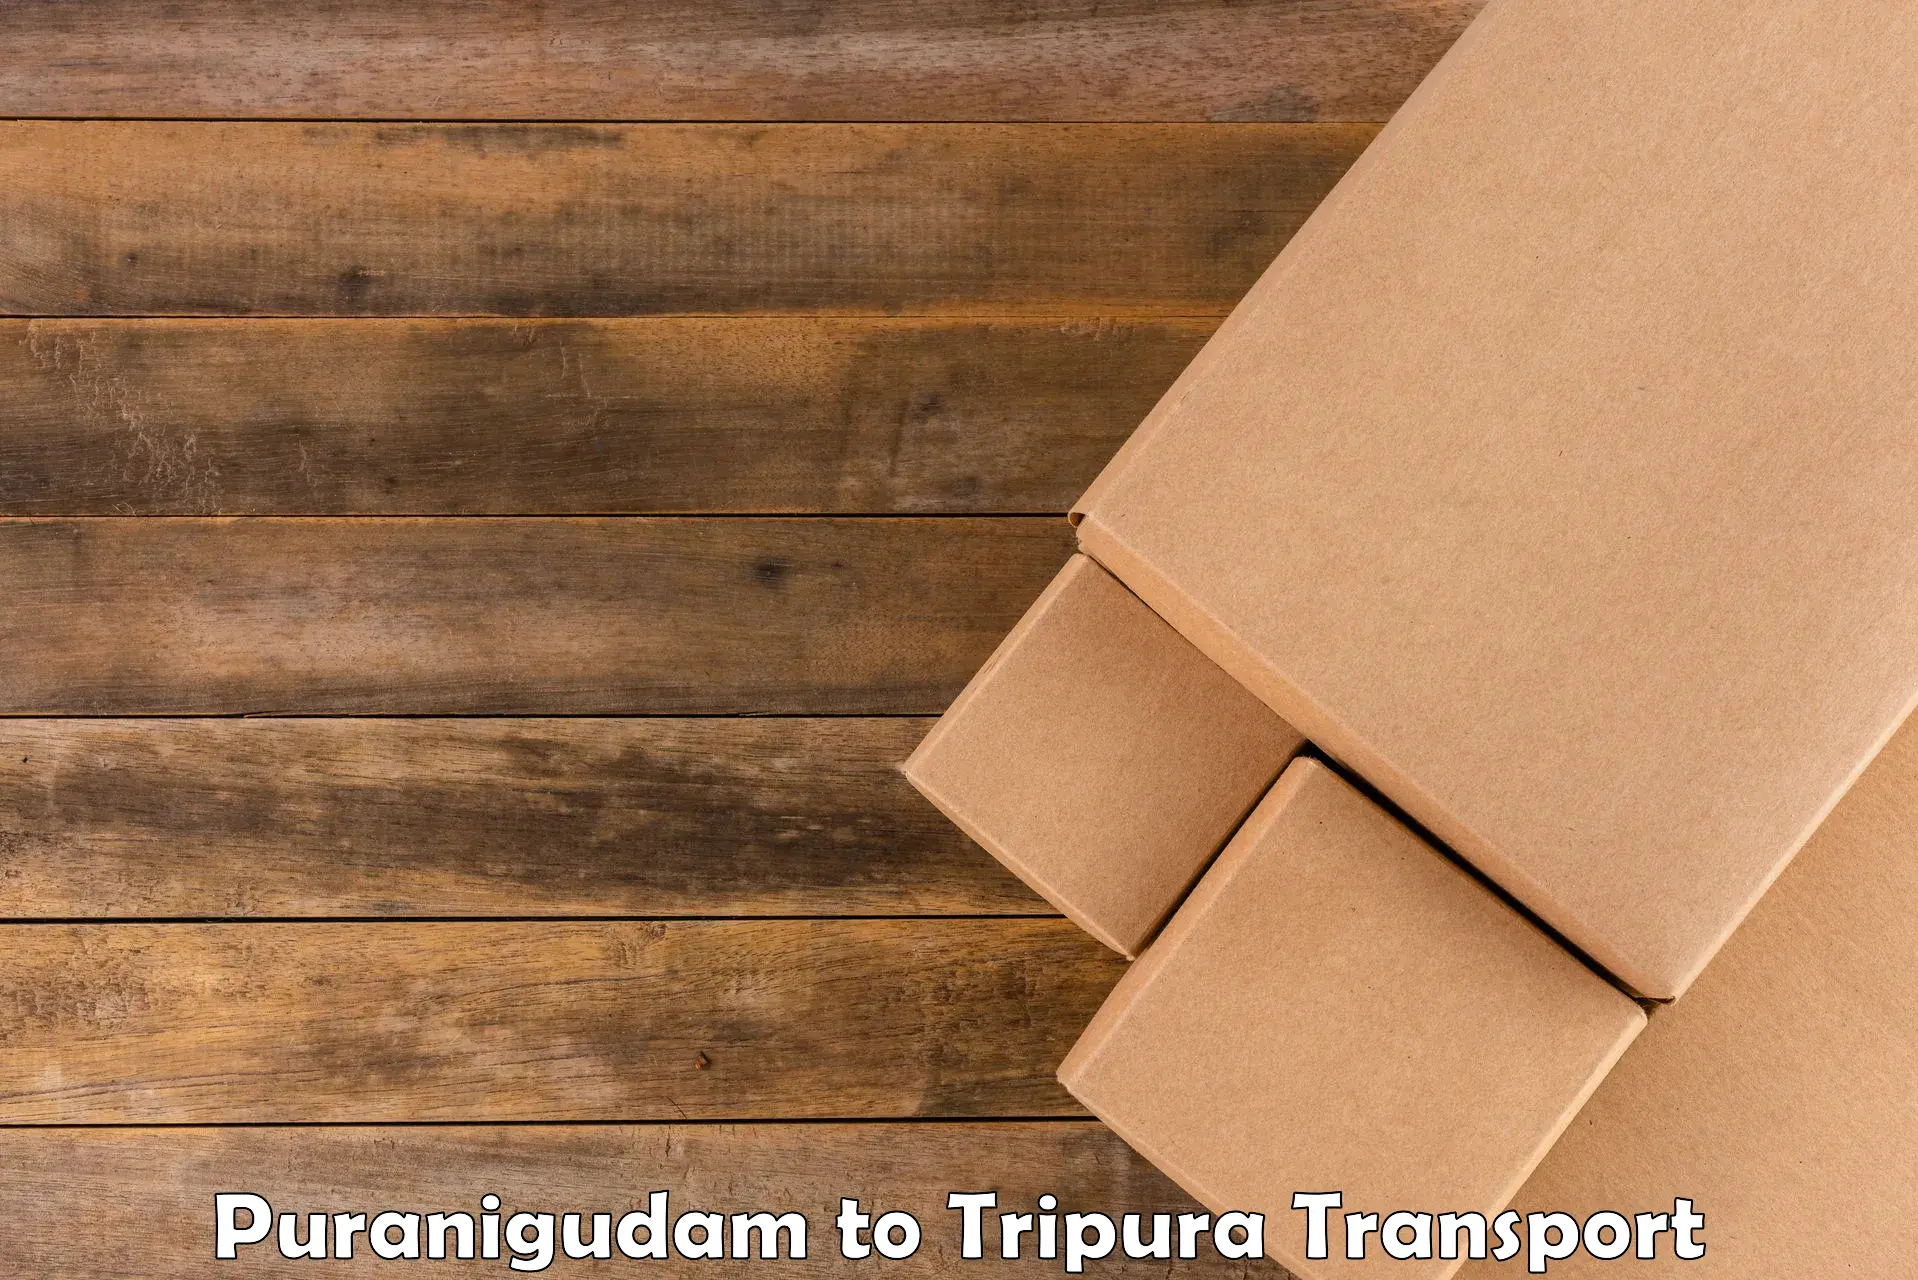 Container transport service Puranigudam to Manu Bazar